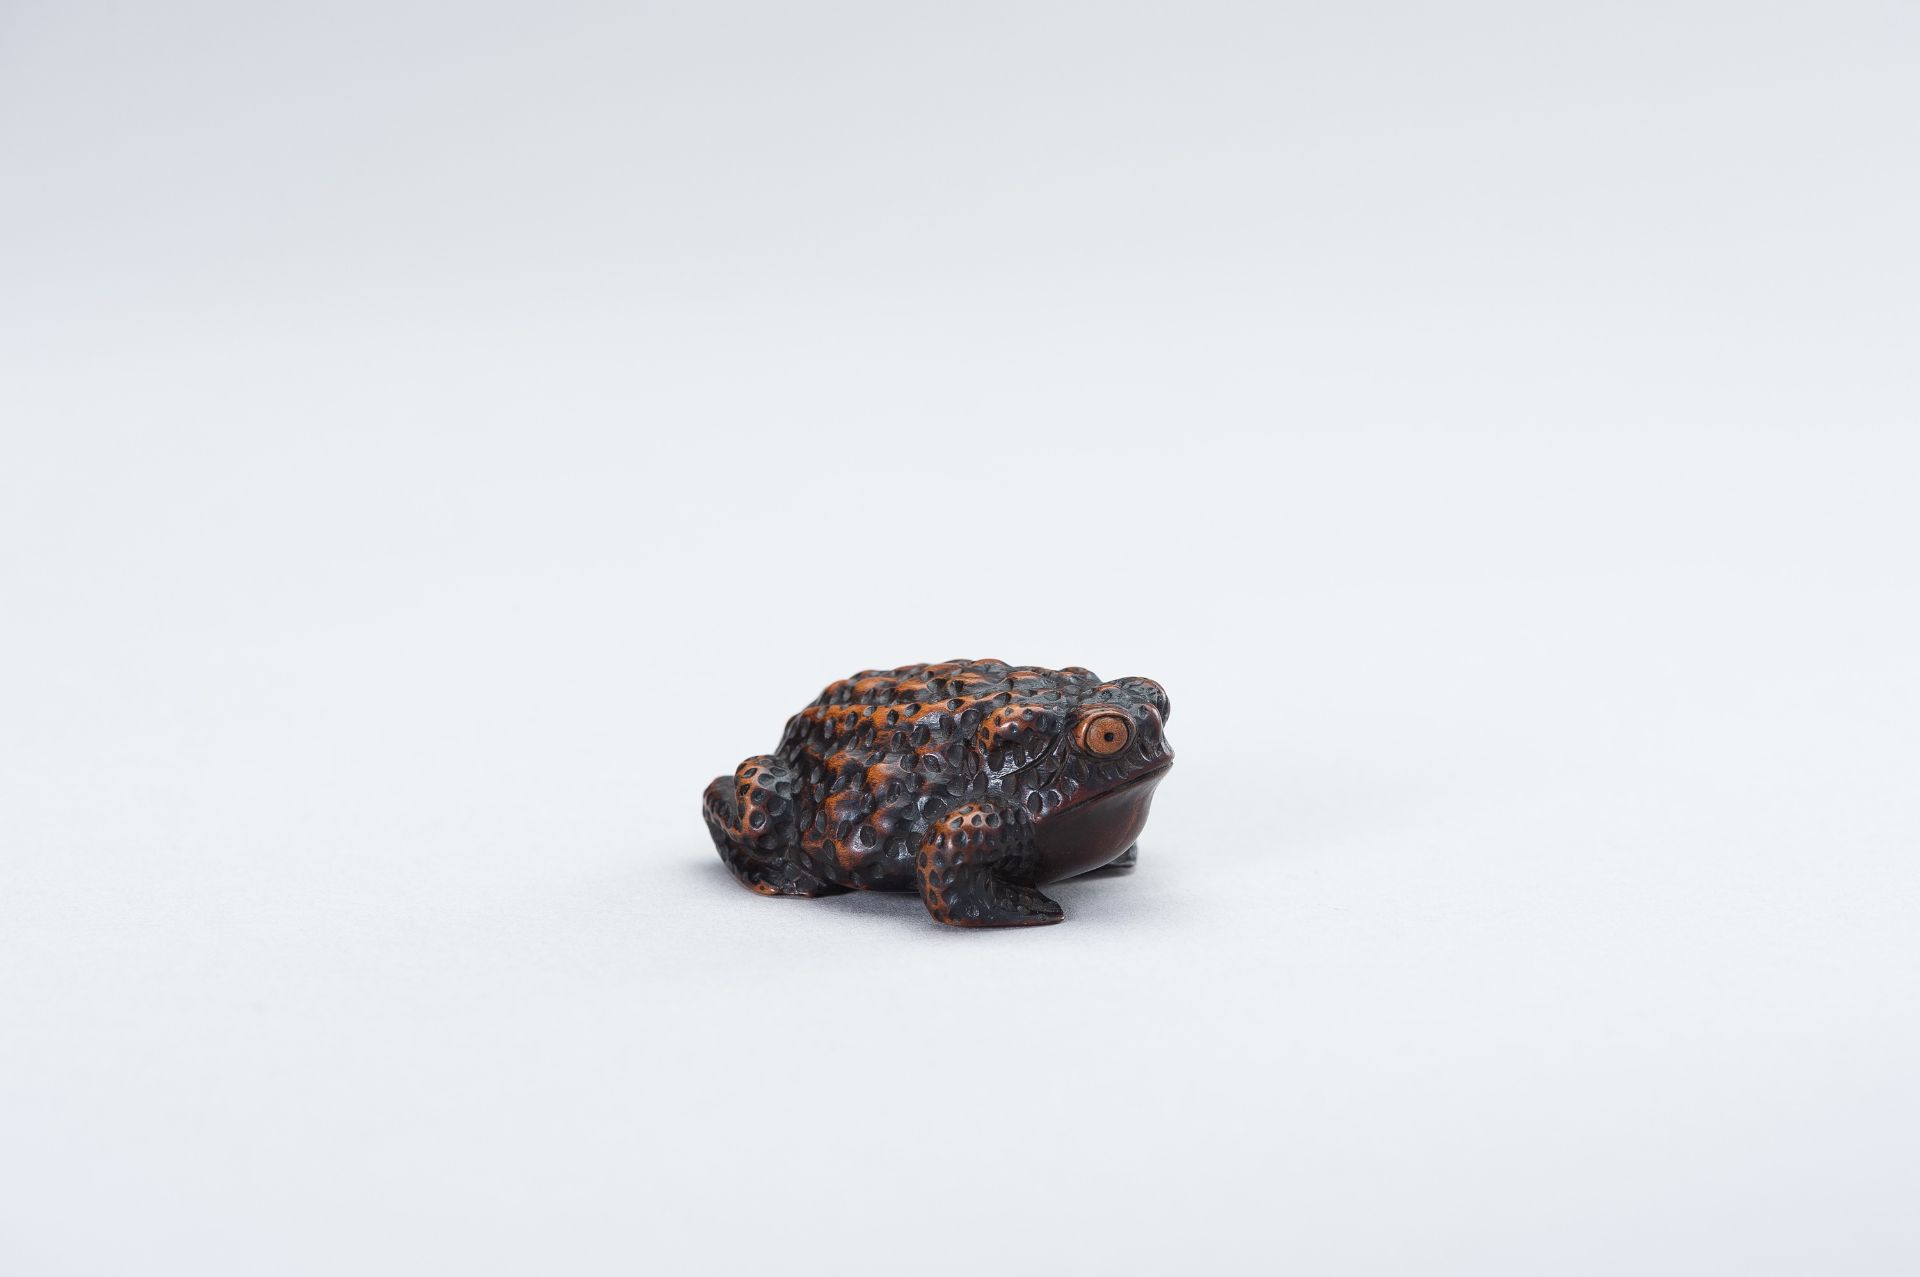 SHIGETADA: A WOOD NETSUKE OF A TOAD - Image 7 of 14